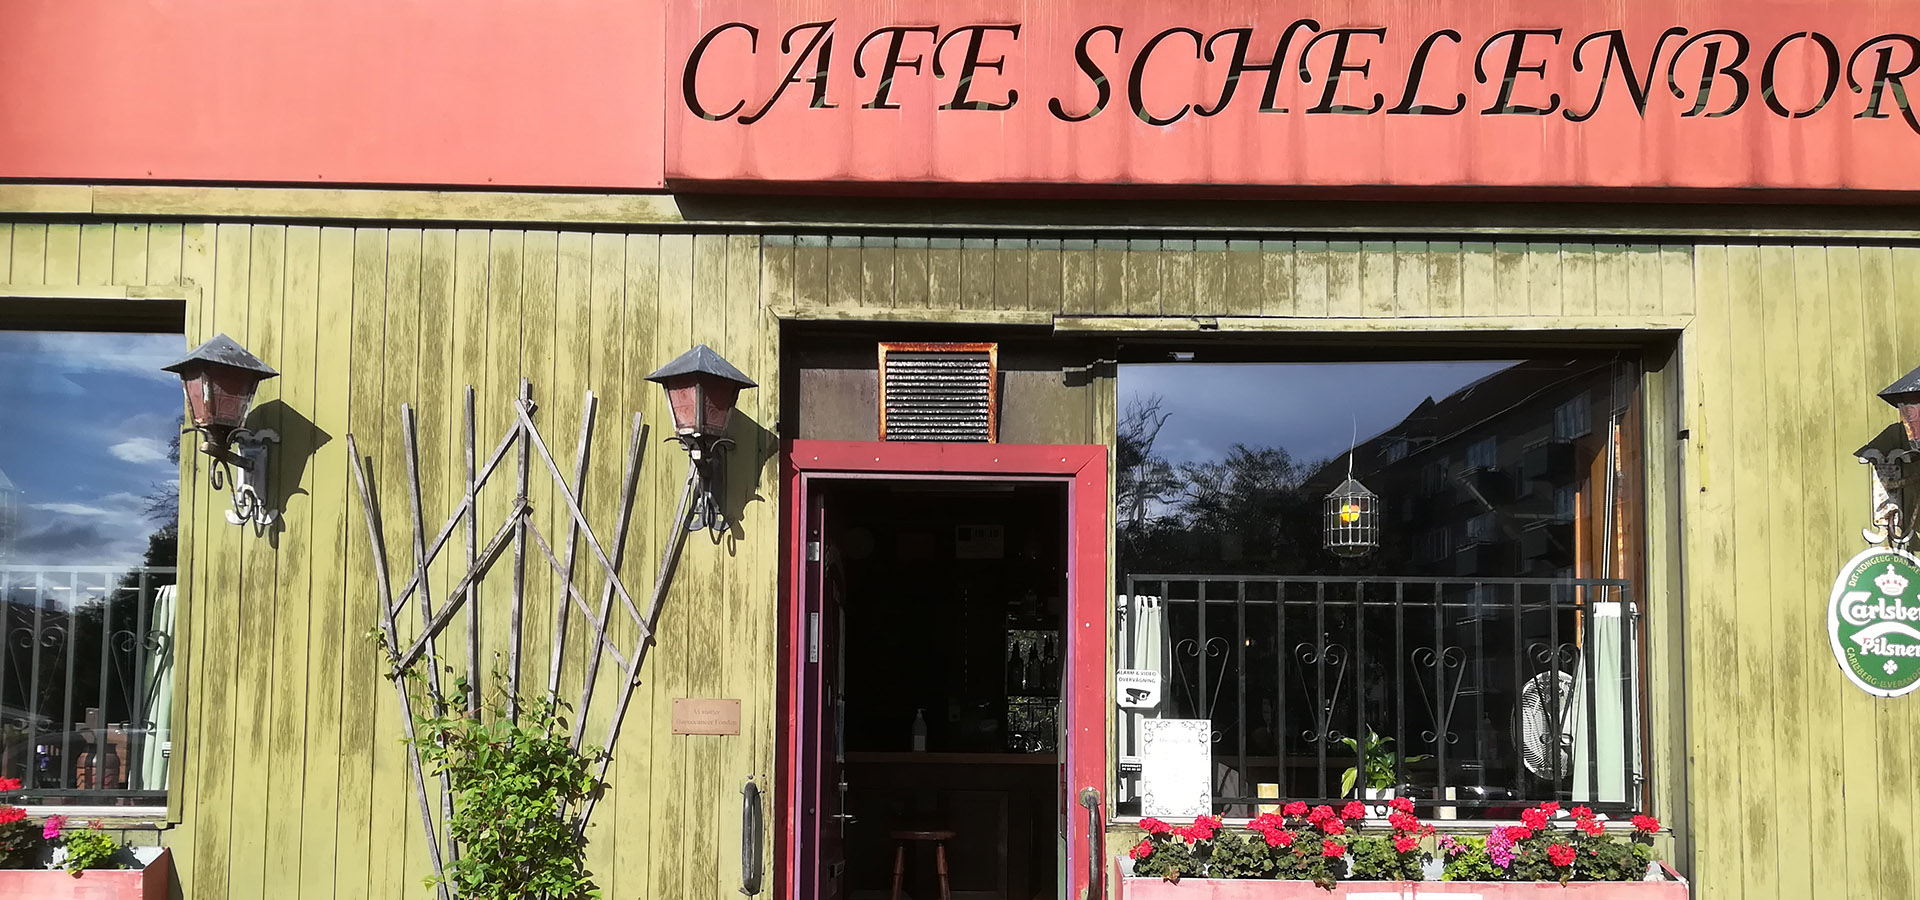 Cafe Schelenborg - Kastrupvej 67